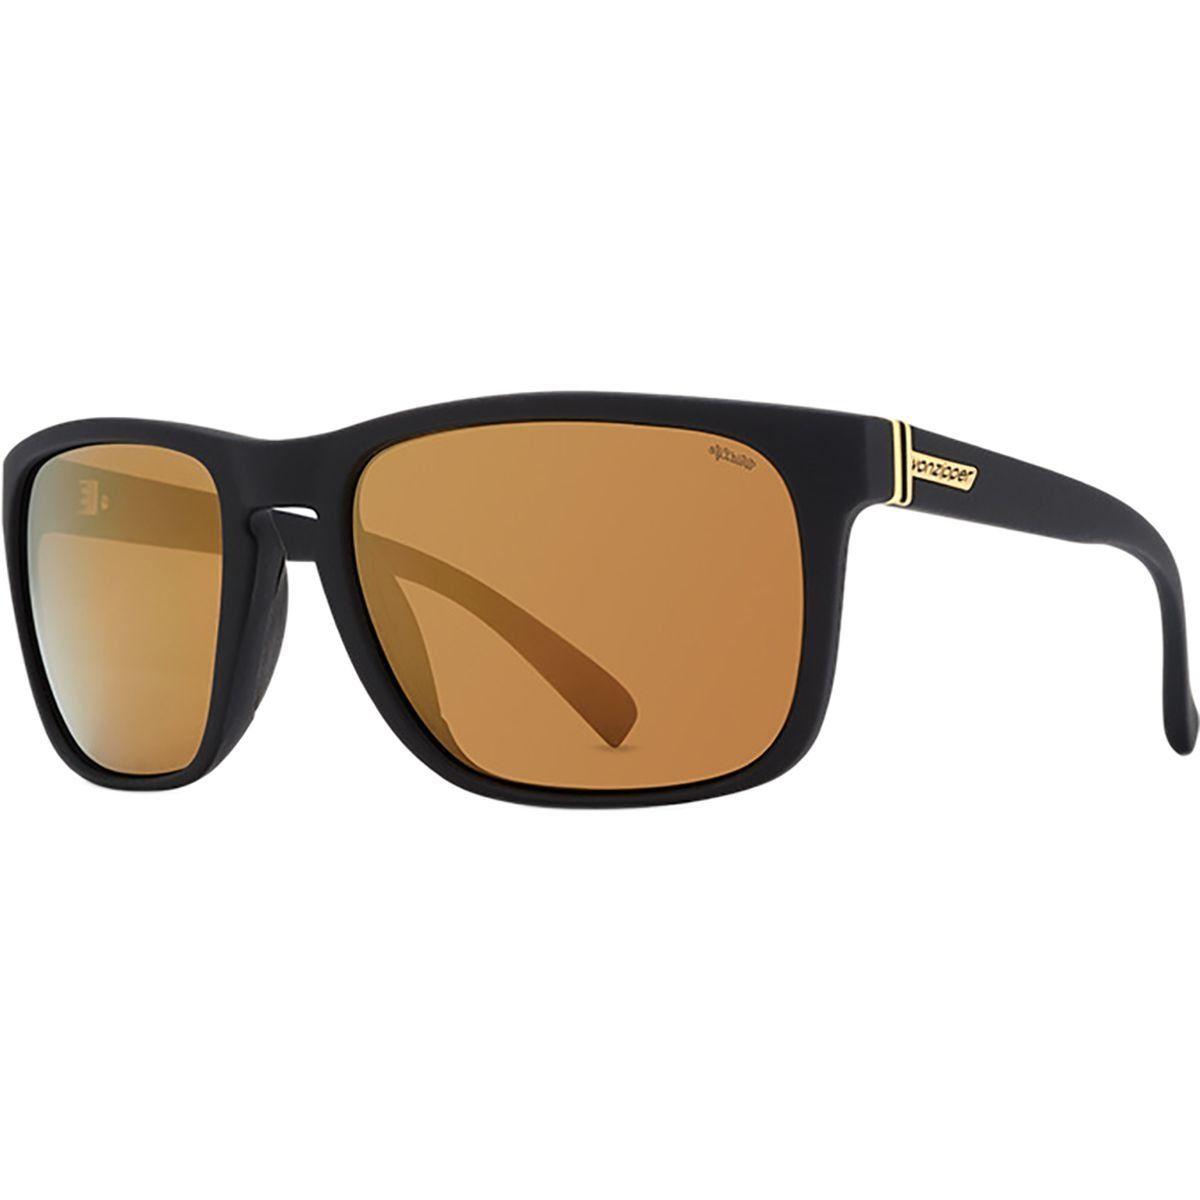 Von Zipper Logo - Amazon.com: VonZipper Mens Lomax Sunglasses, BlckGlossw/GoldFlash ...